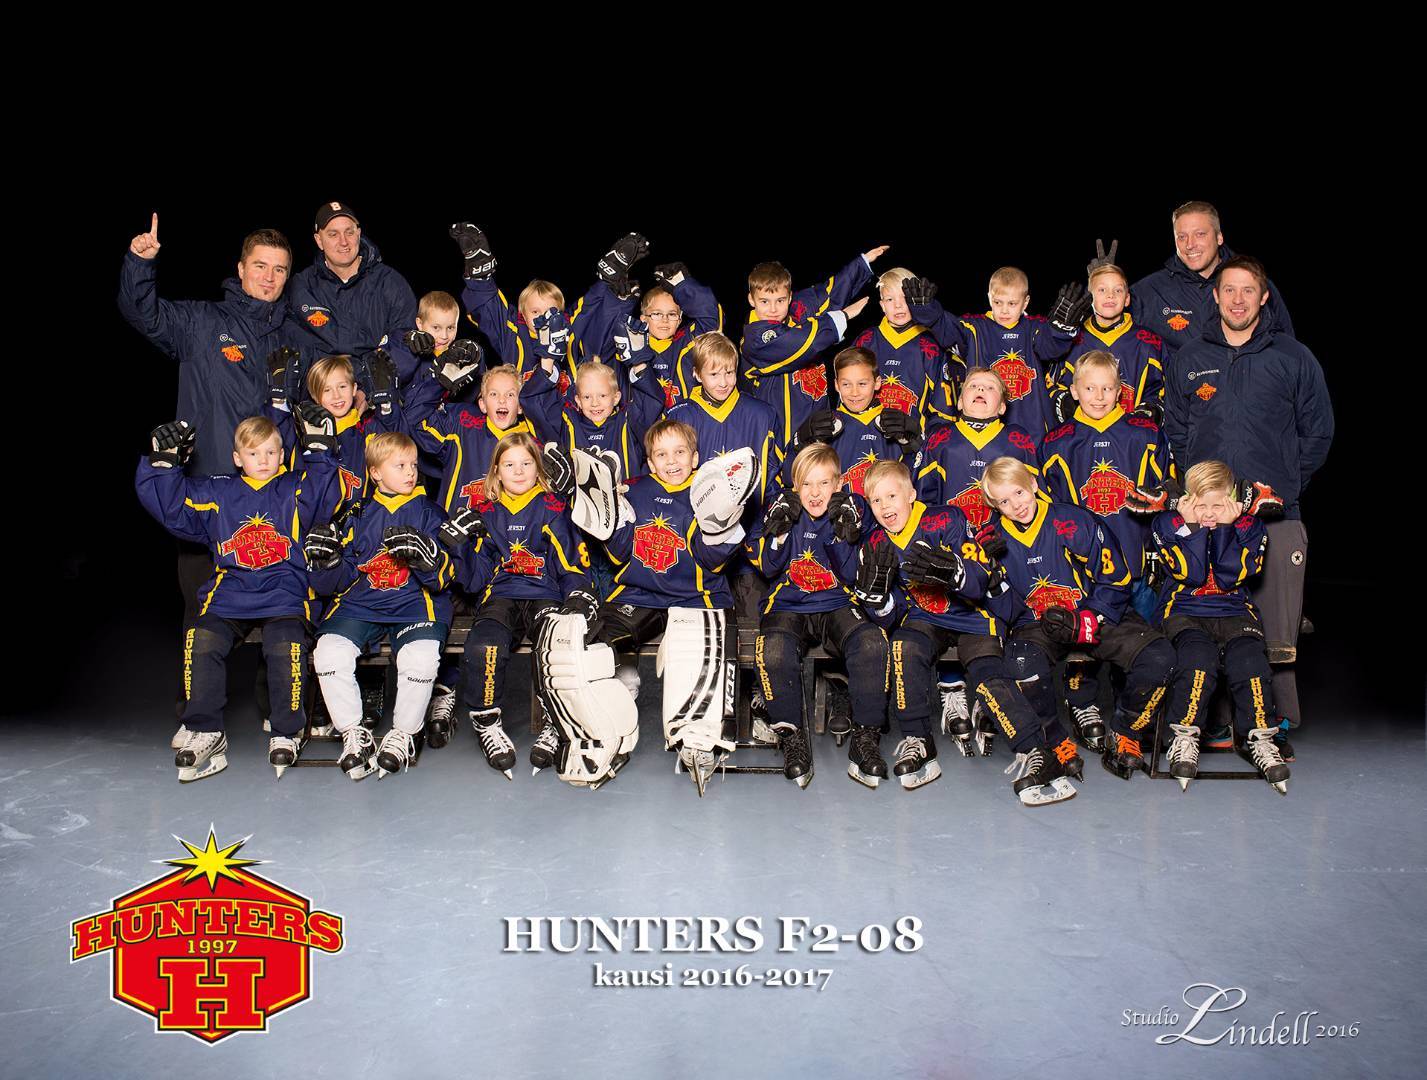 Hunters -08 joukkuekuva 2016-2017